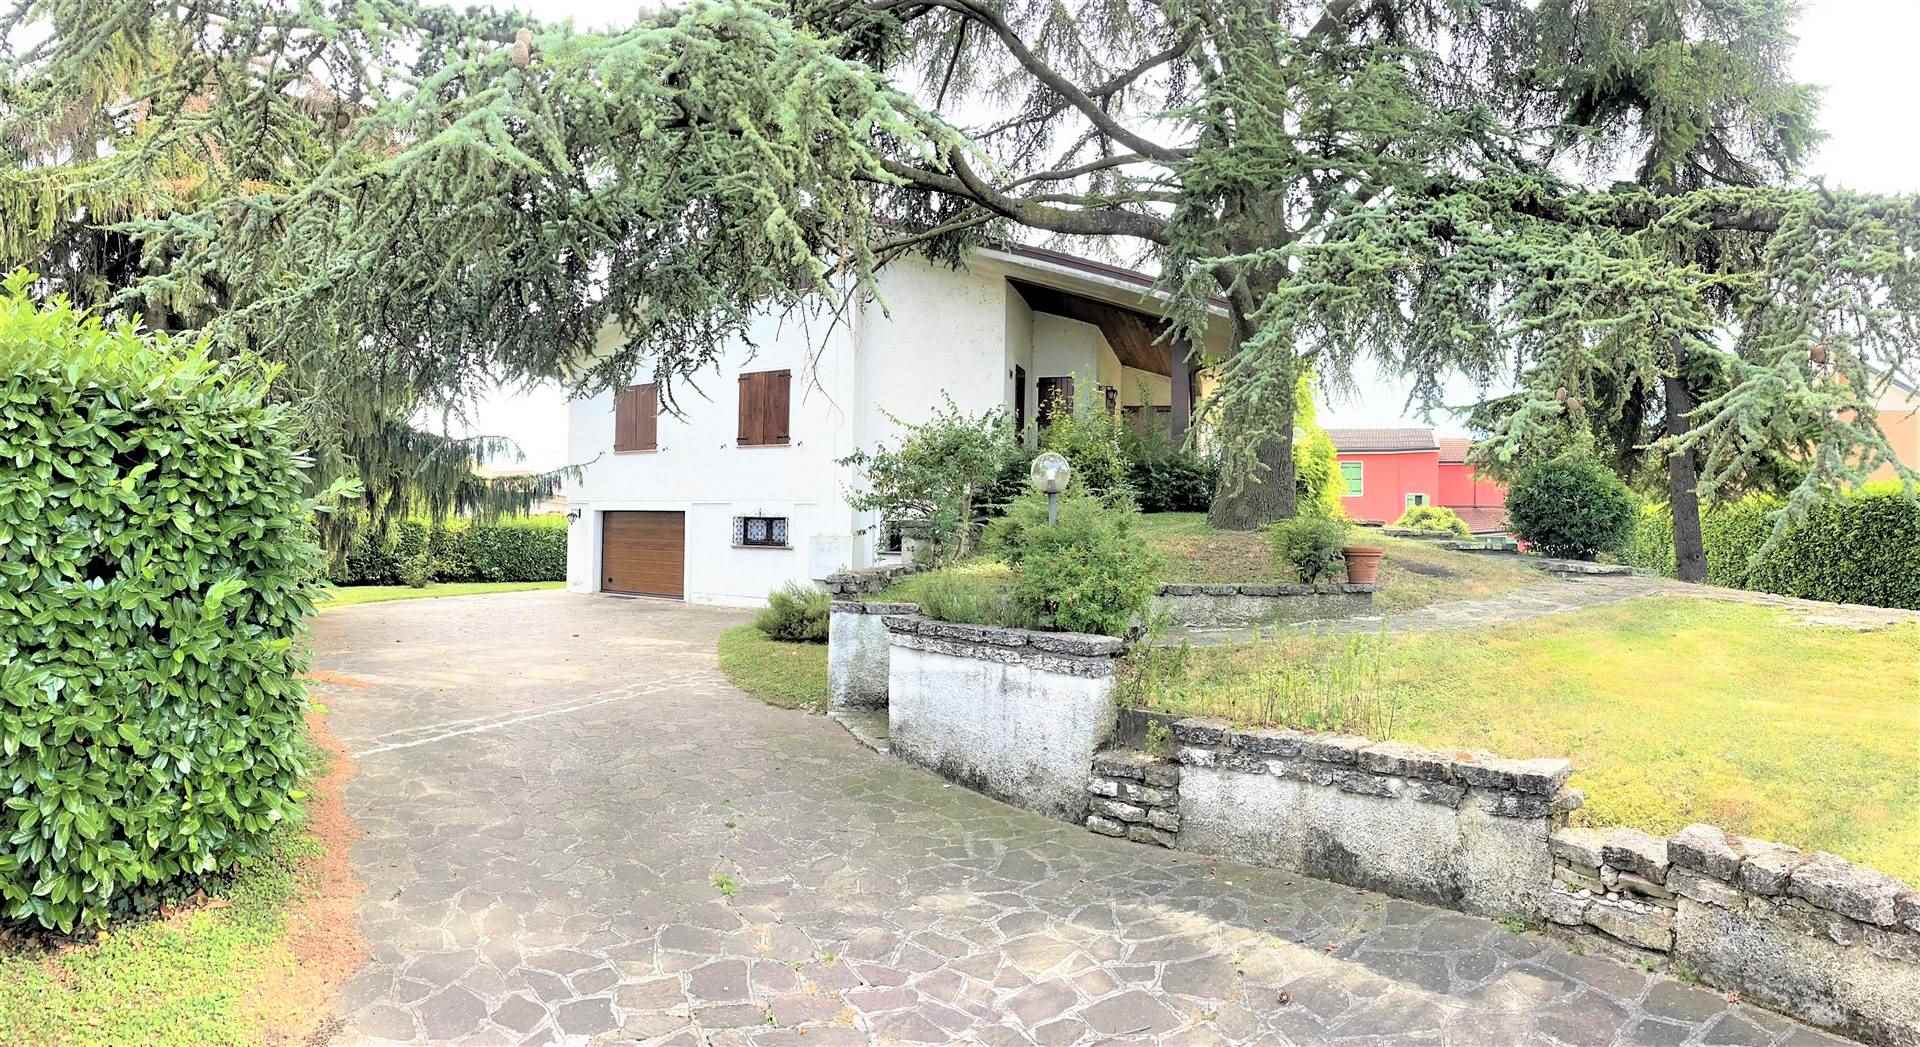 Villa in Vendita a Porto Mantovano